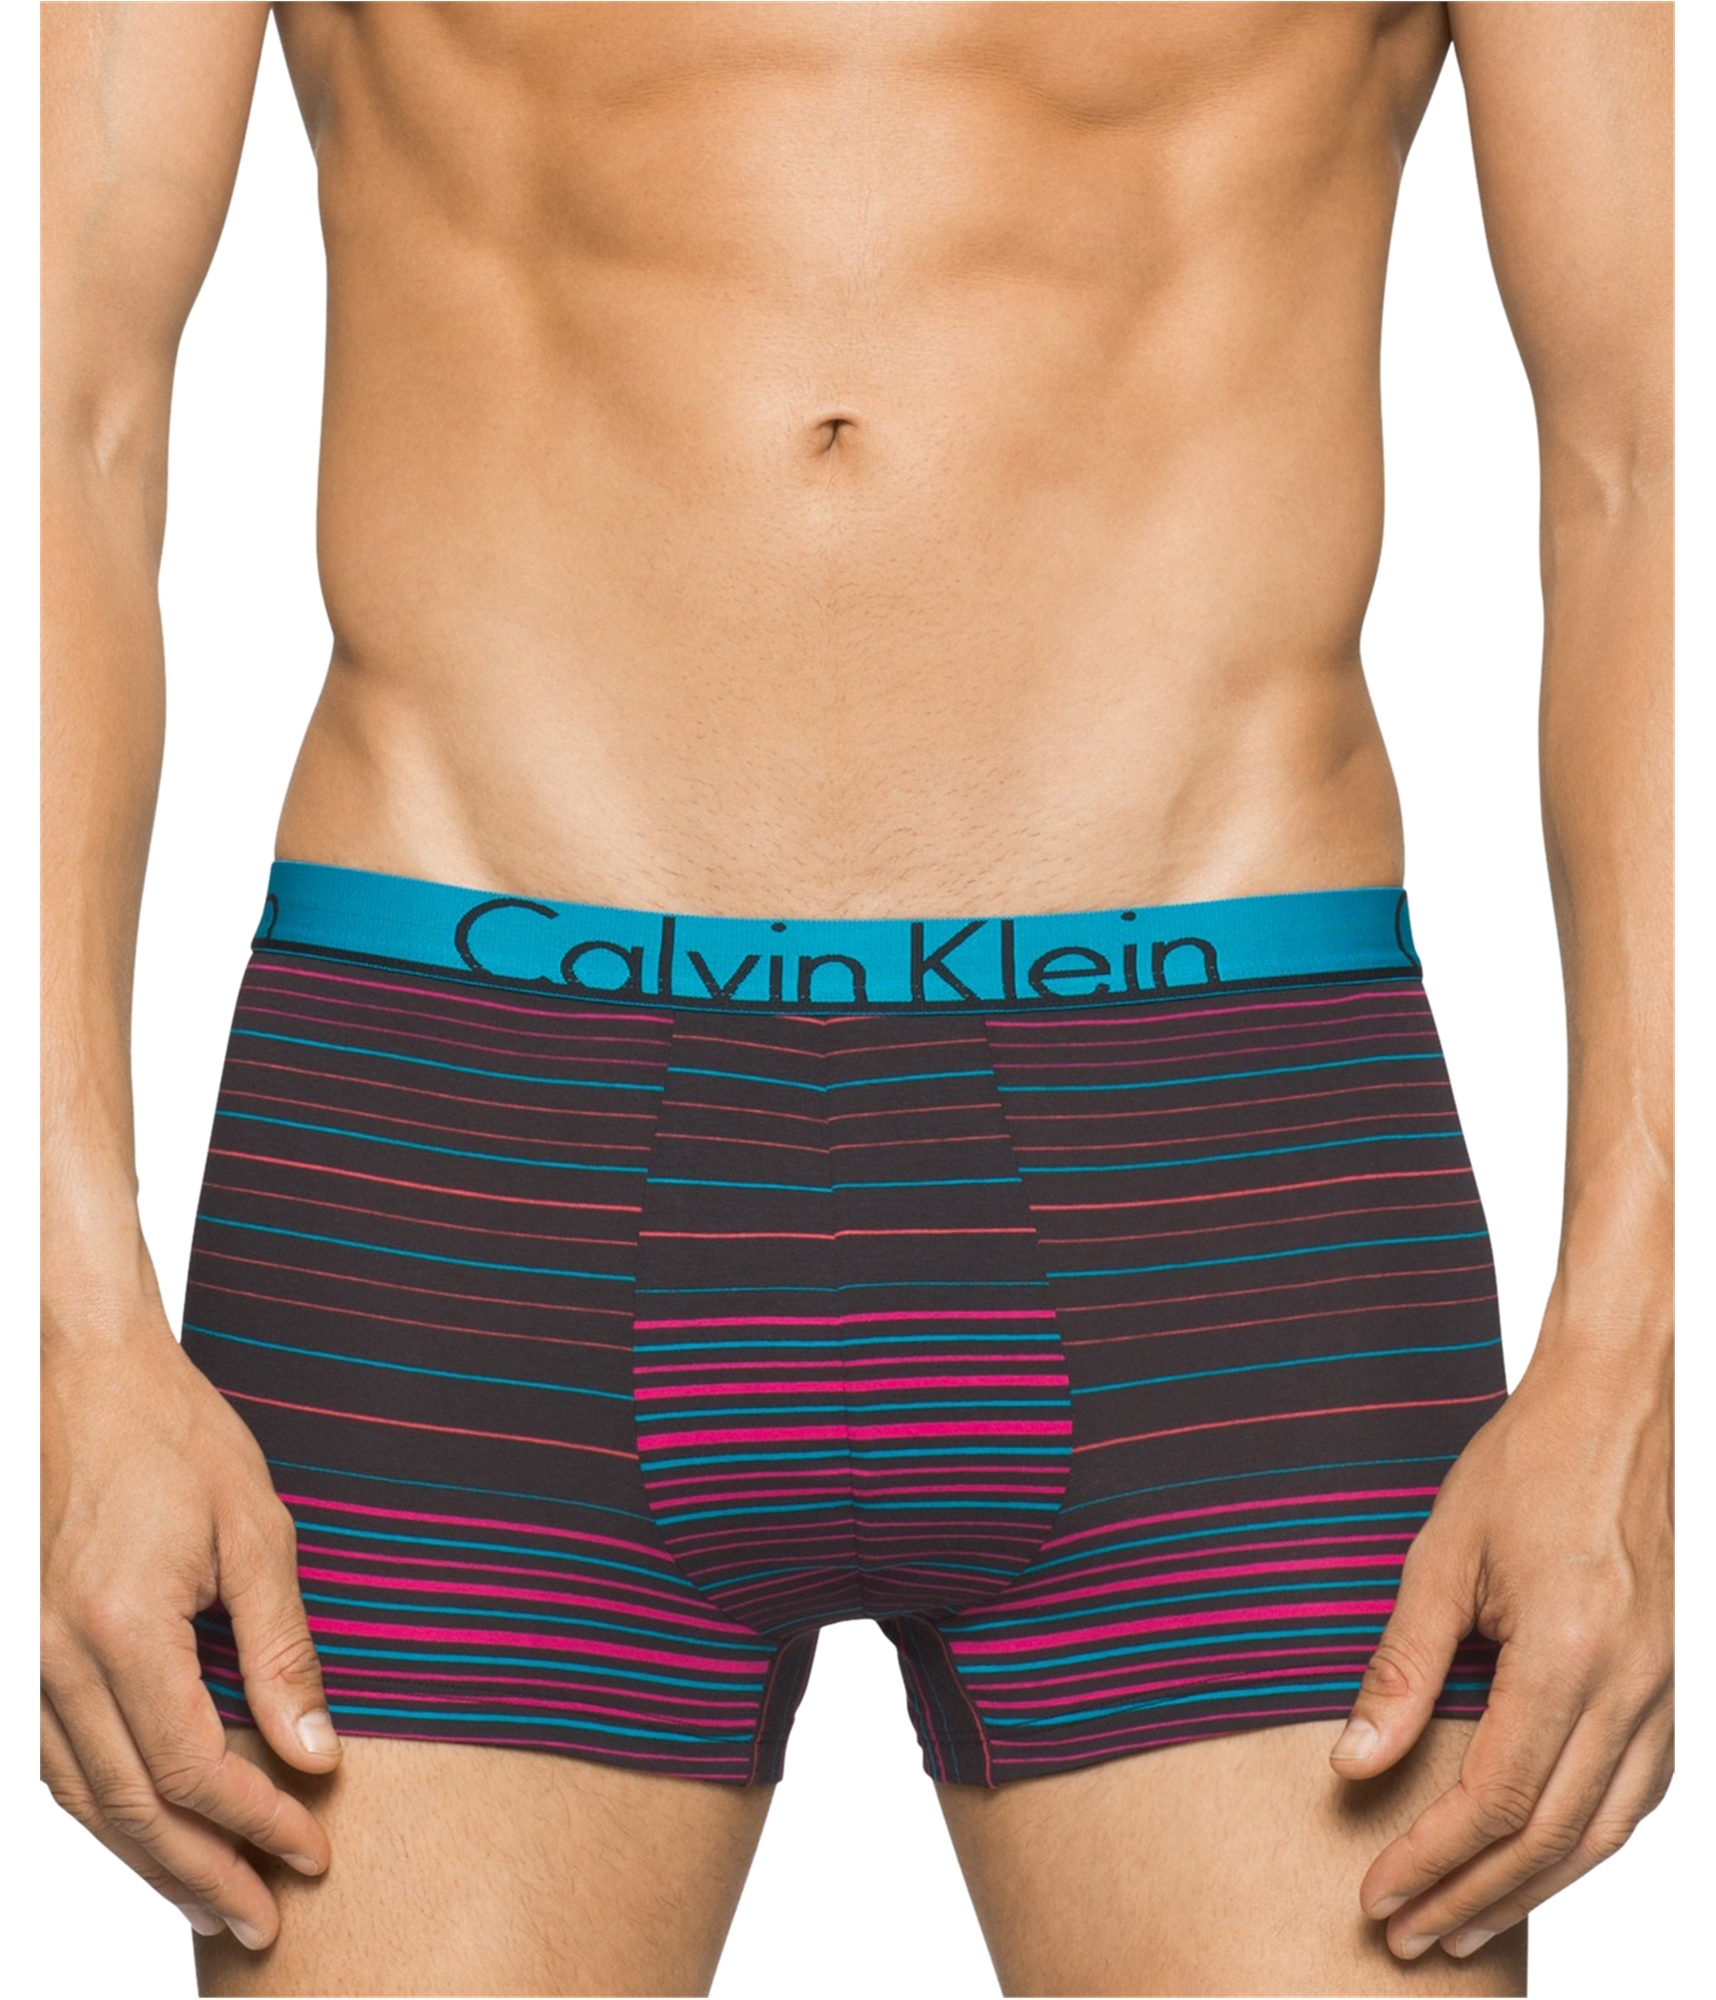 Buy a Mens Calvin Klein CK Id Underwear Boxers Online , TW2